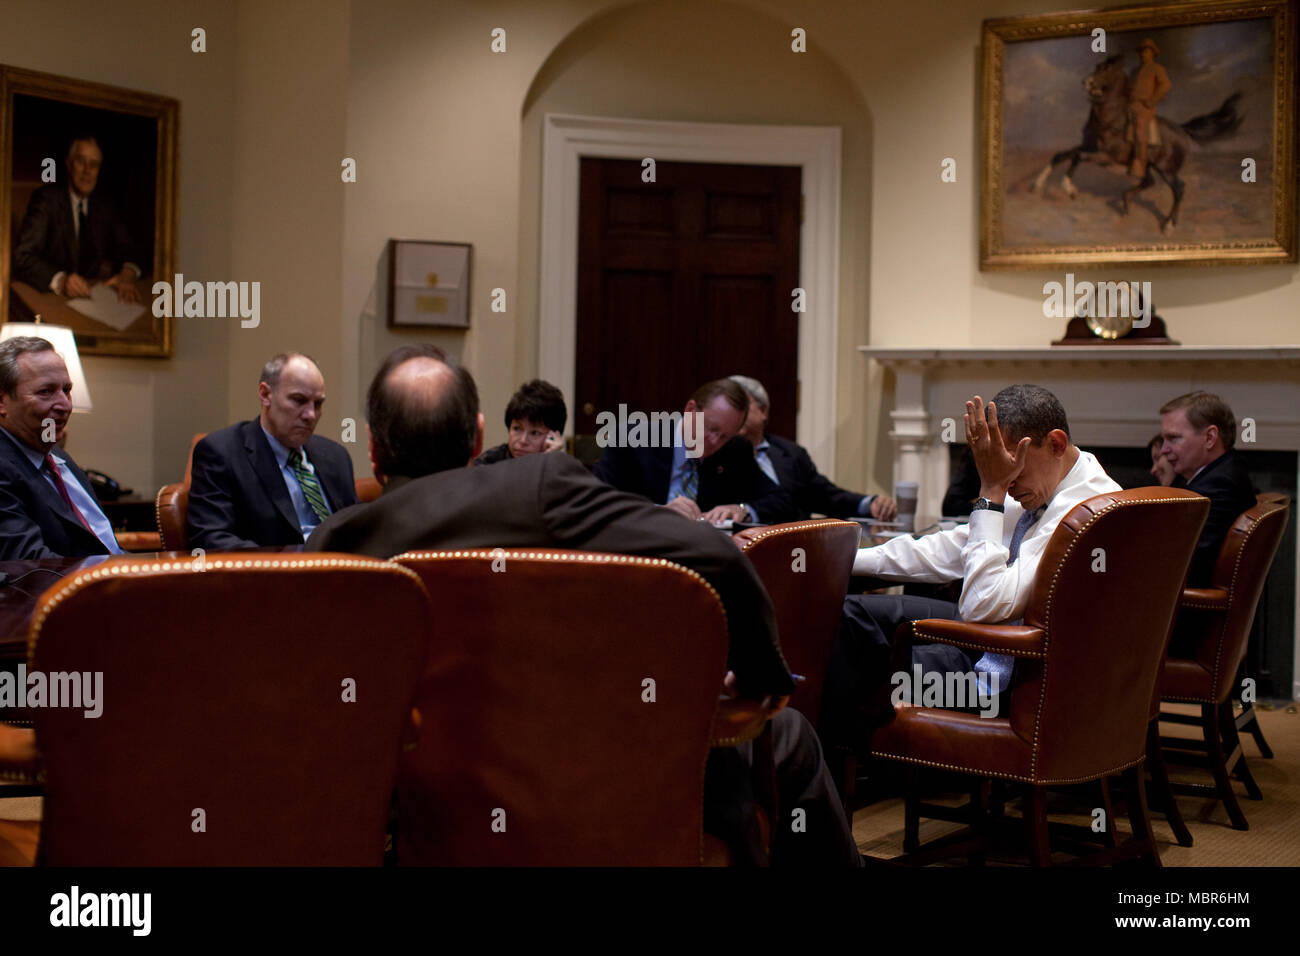 Le président Barack Obama rencontre les conseillers senior dans la Roosevelt Room. 2/16/09. .Photo Officiel de la Maison Blanche par Pete Souza Banque D'Images